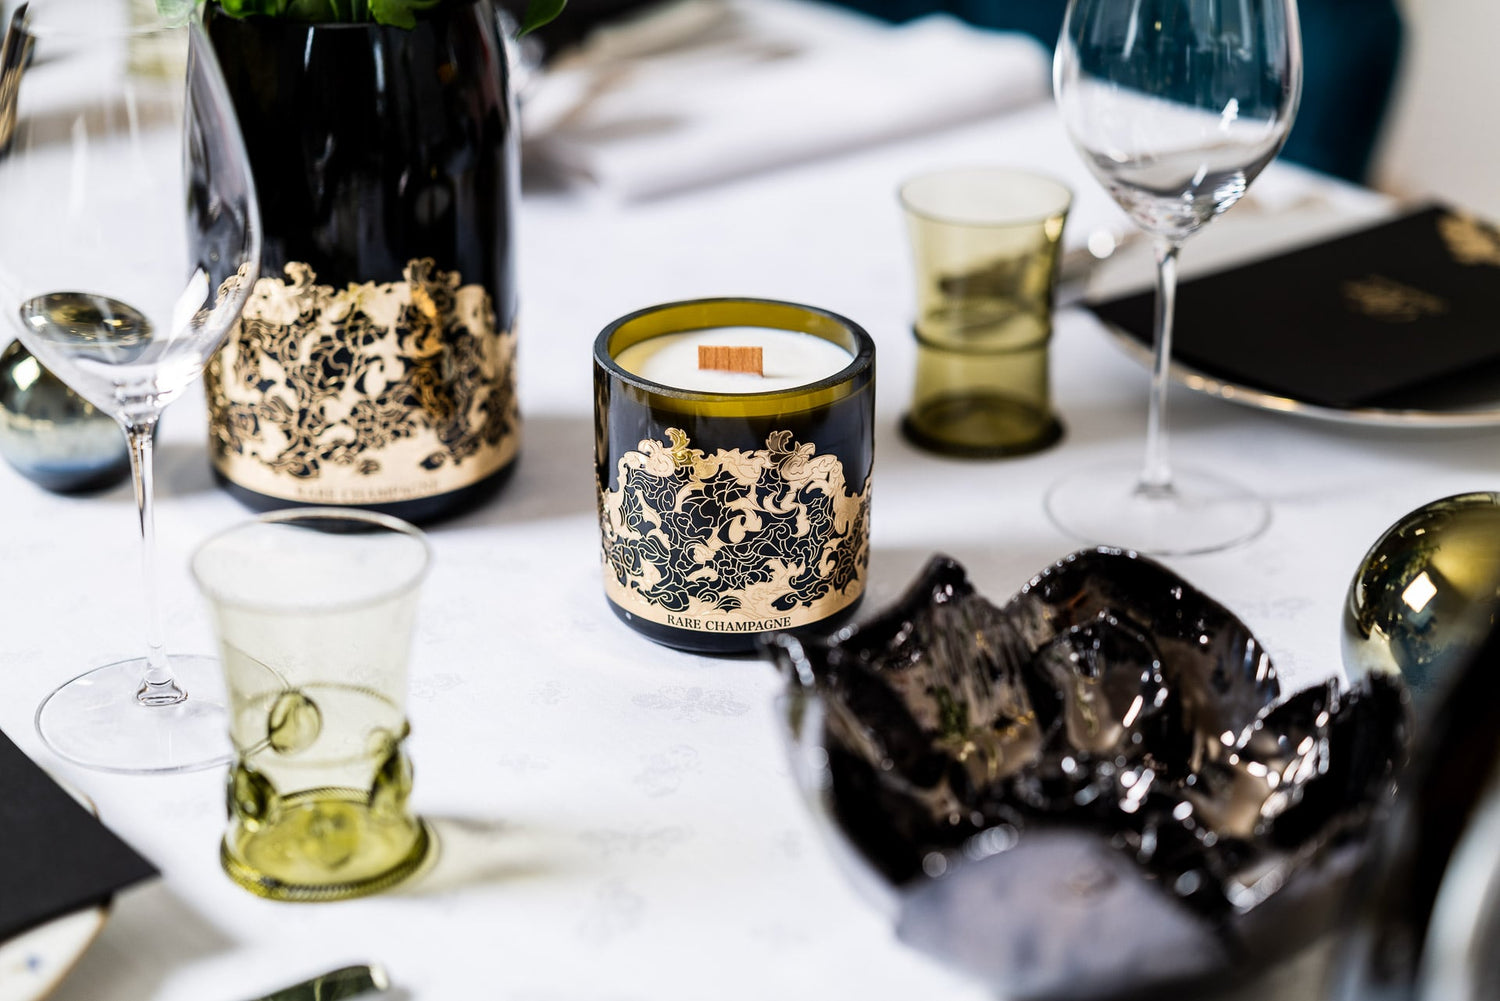 Bougie marsault réalisée dans une bouteille Rare champagne, posée sur une table dans un restaurant de luxe 